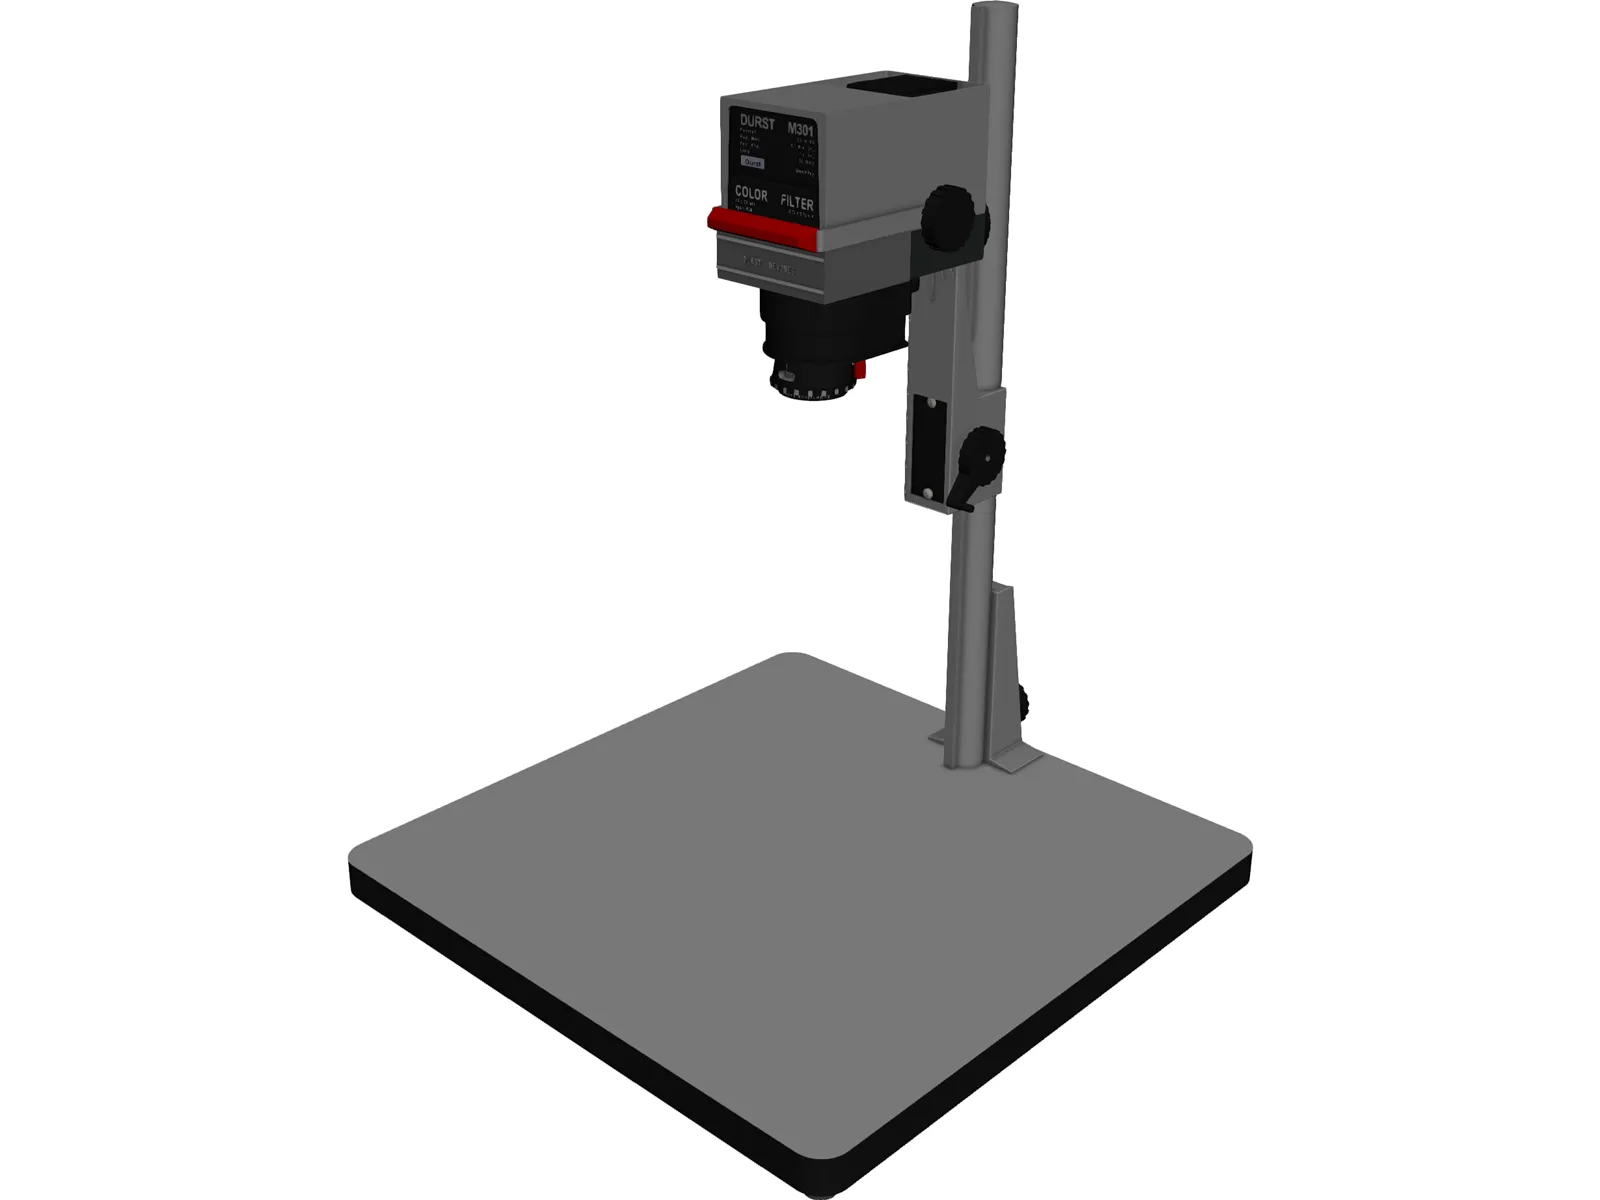 Durst M301 Enlarger 3D Model